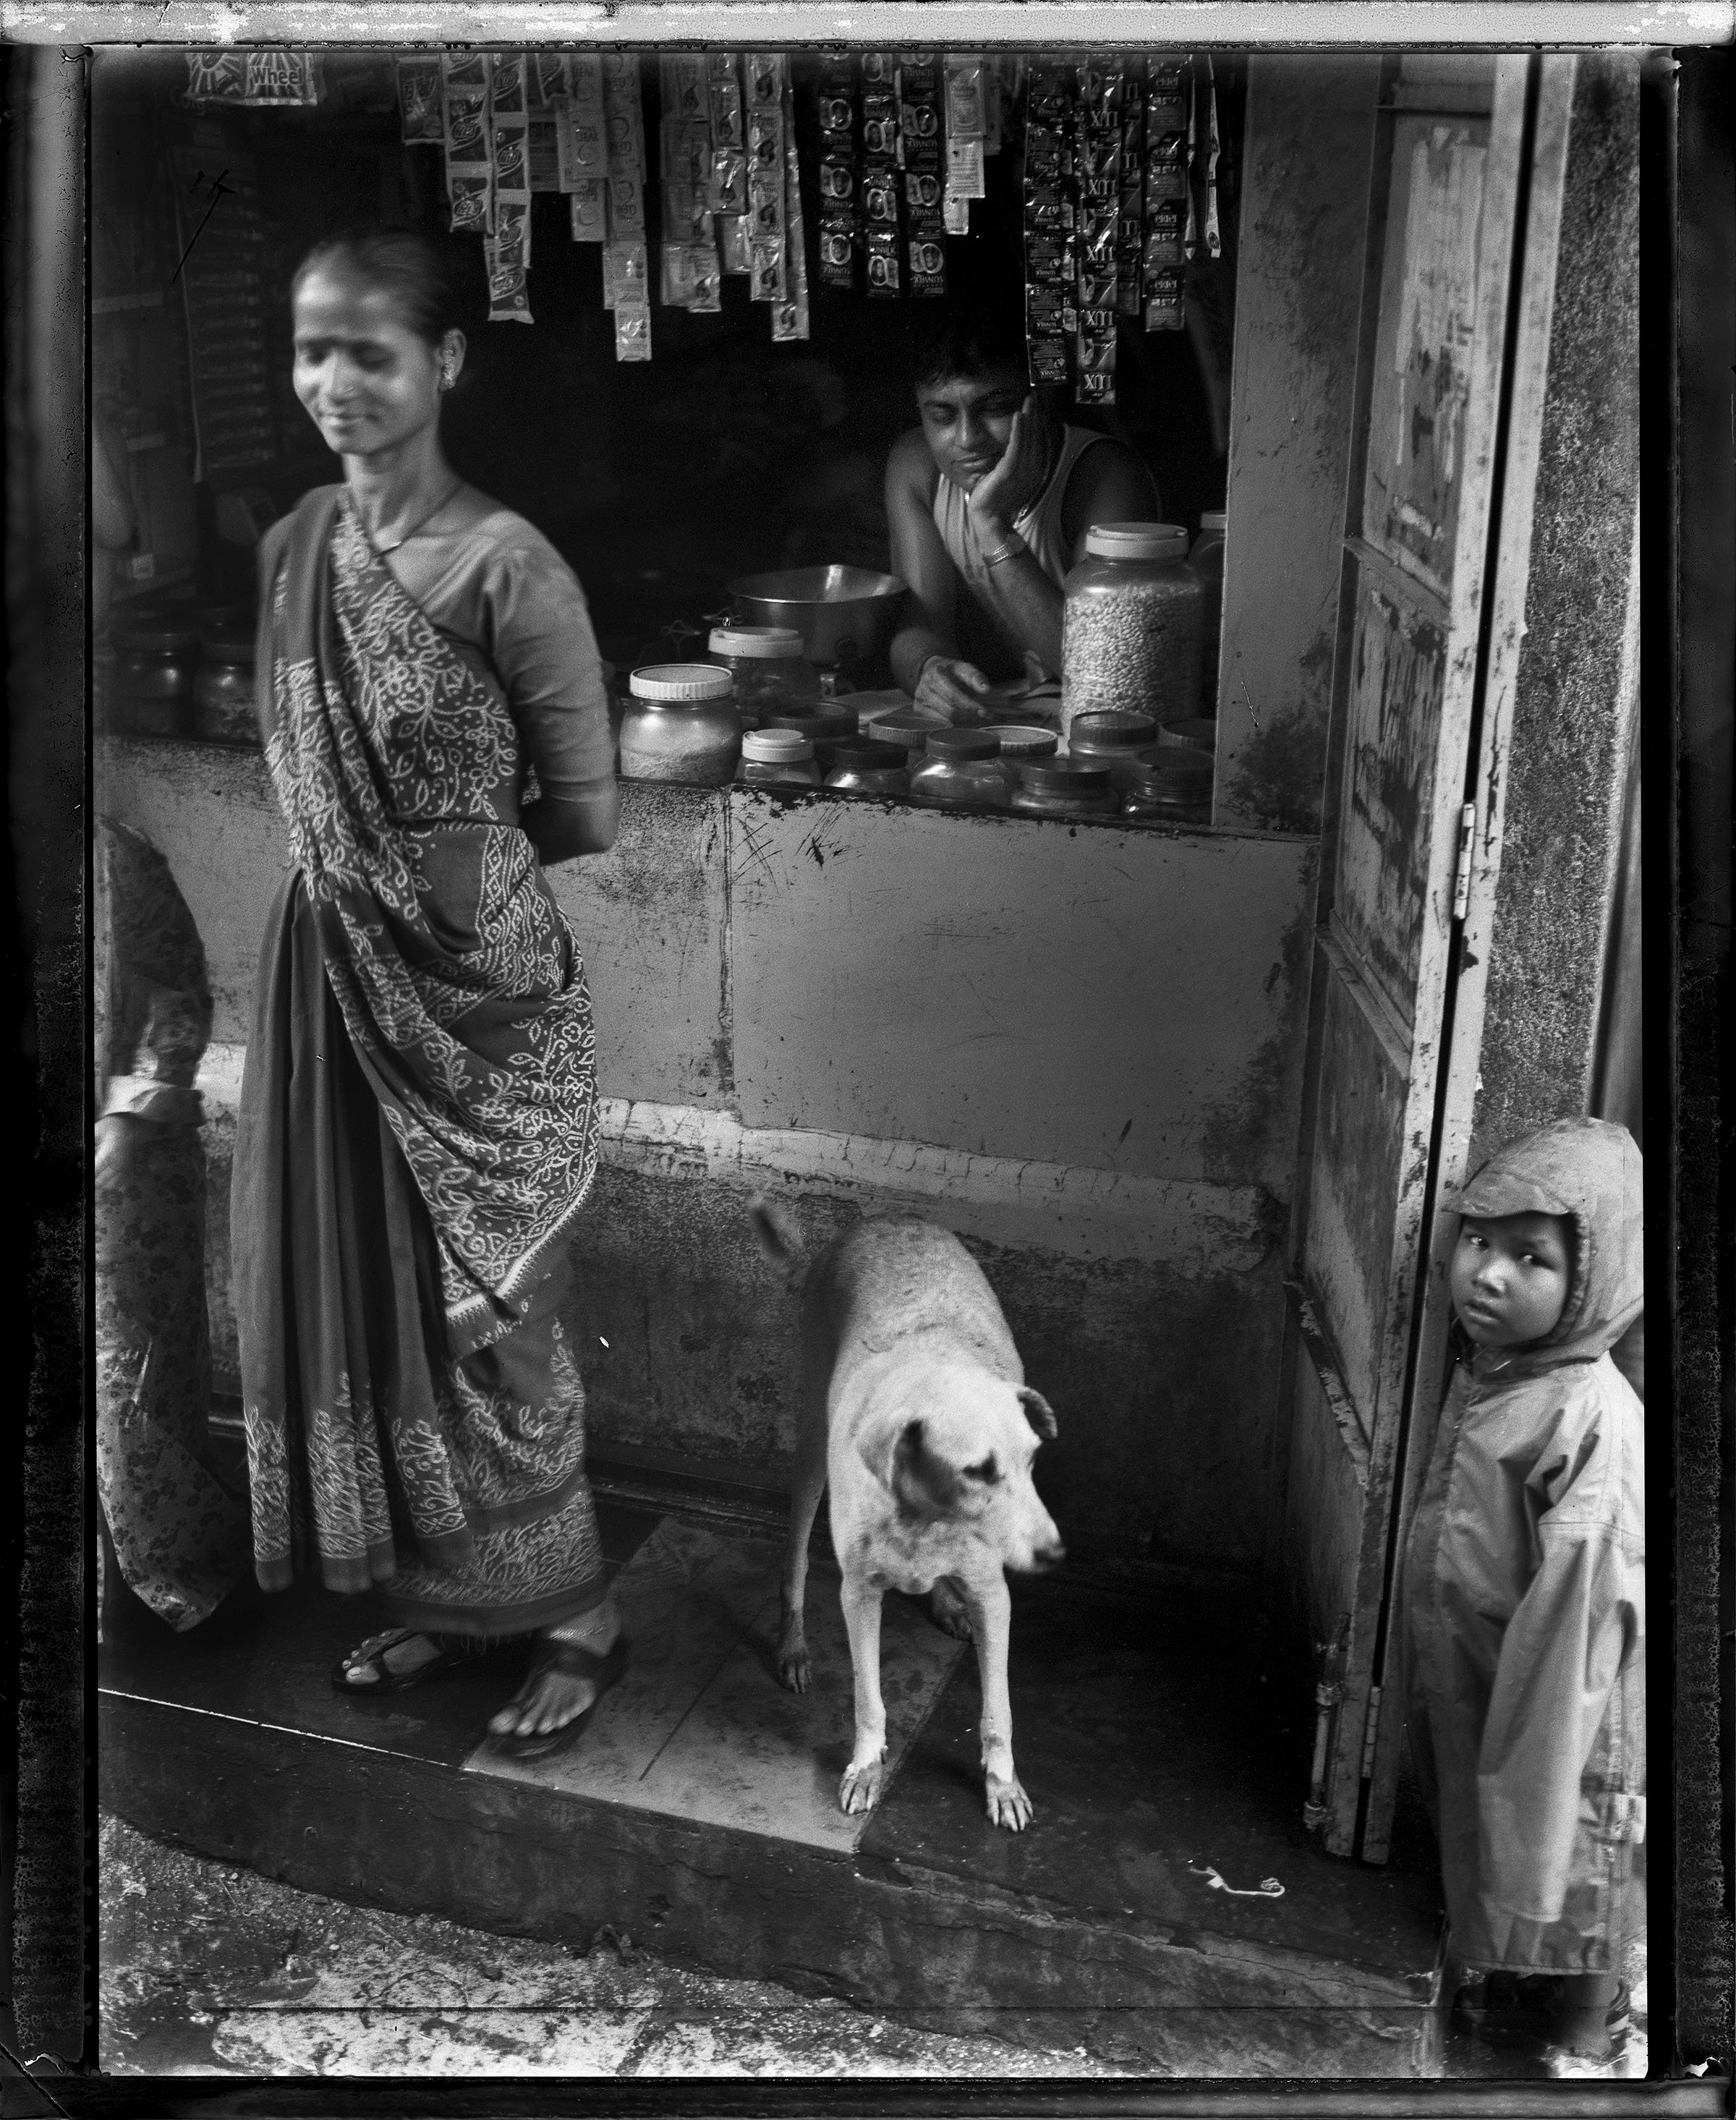 Dharavi slum, Mumbai, India, 2002